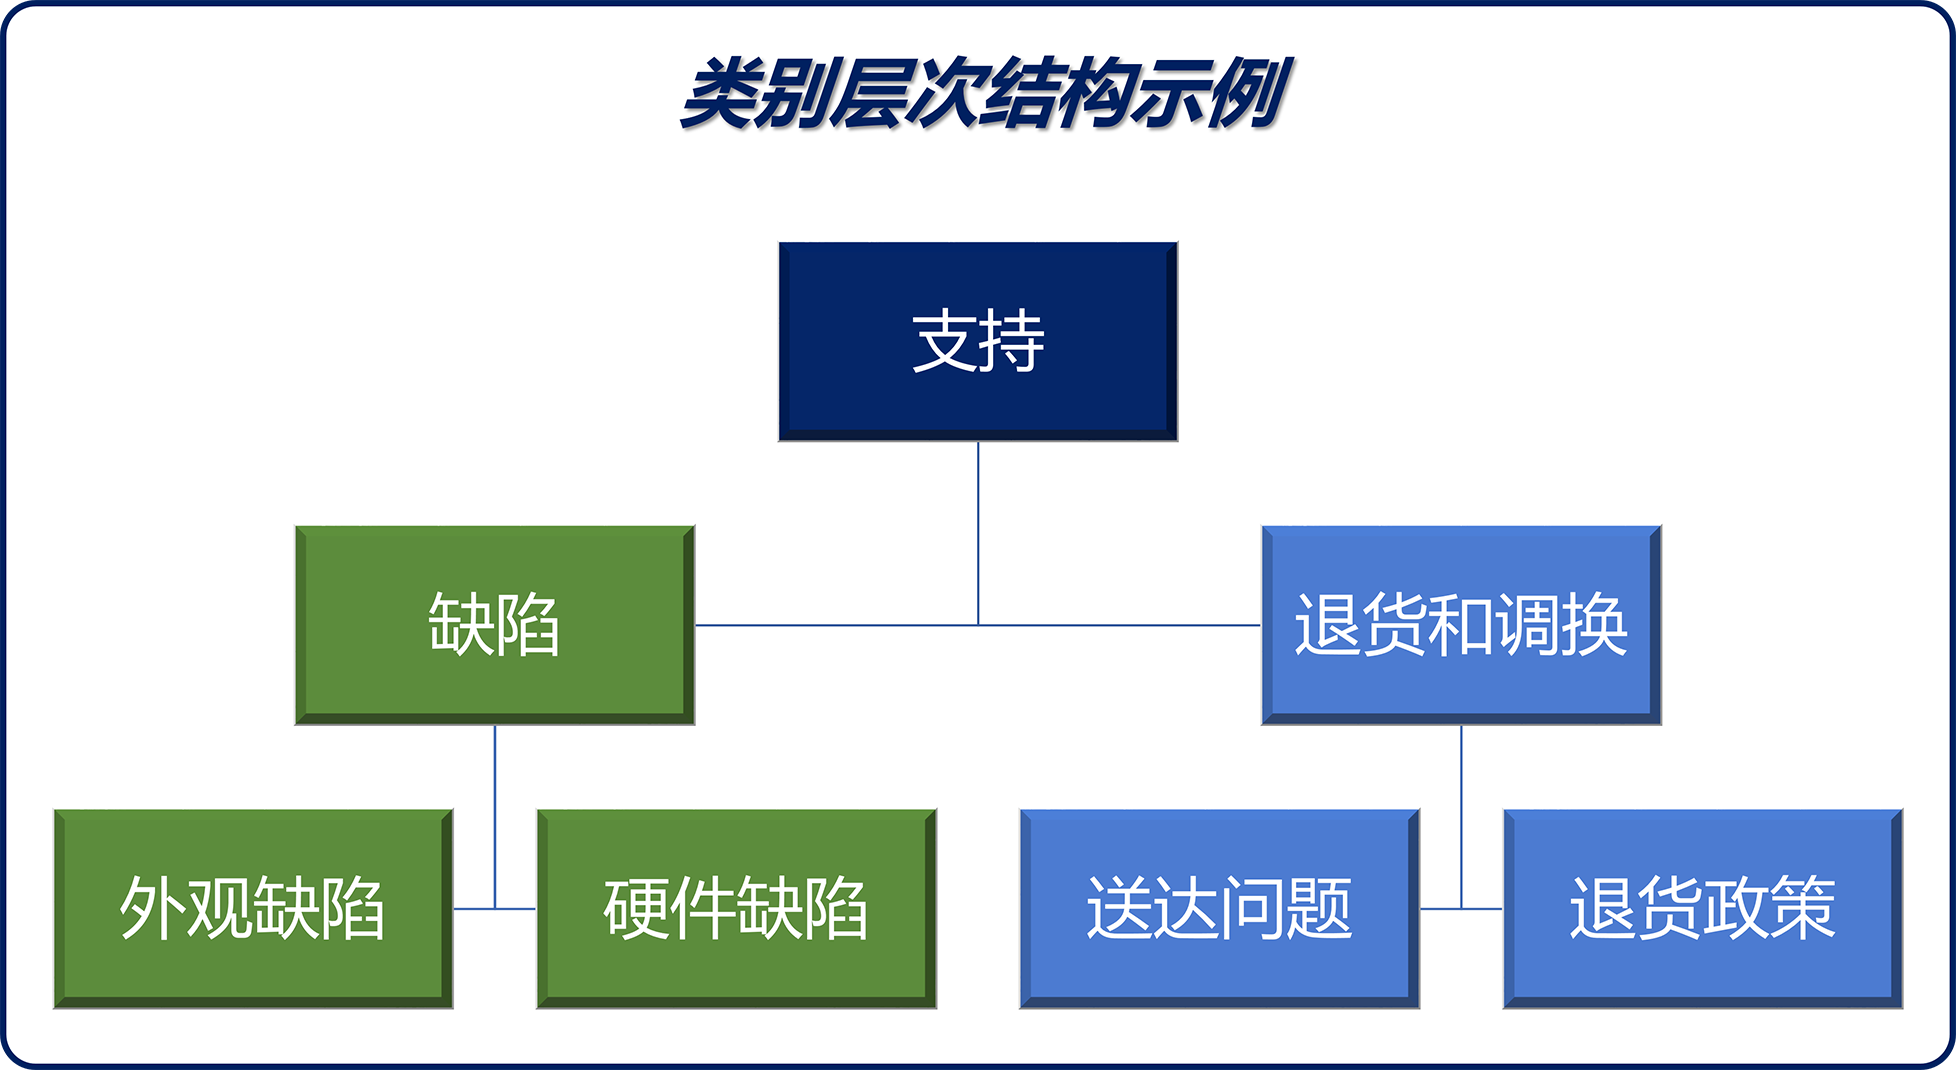 类别层次结构的示意图示例。